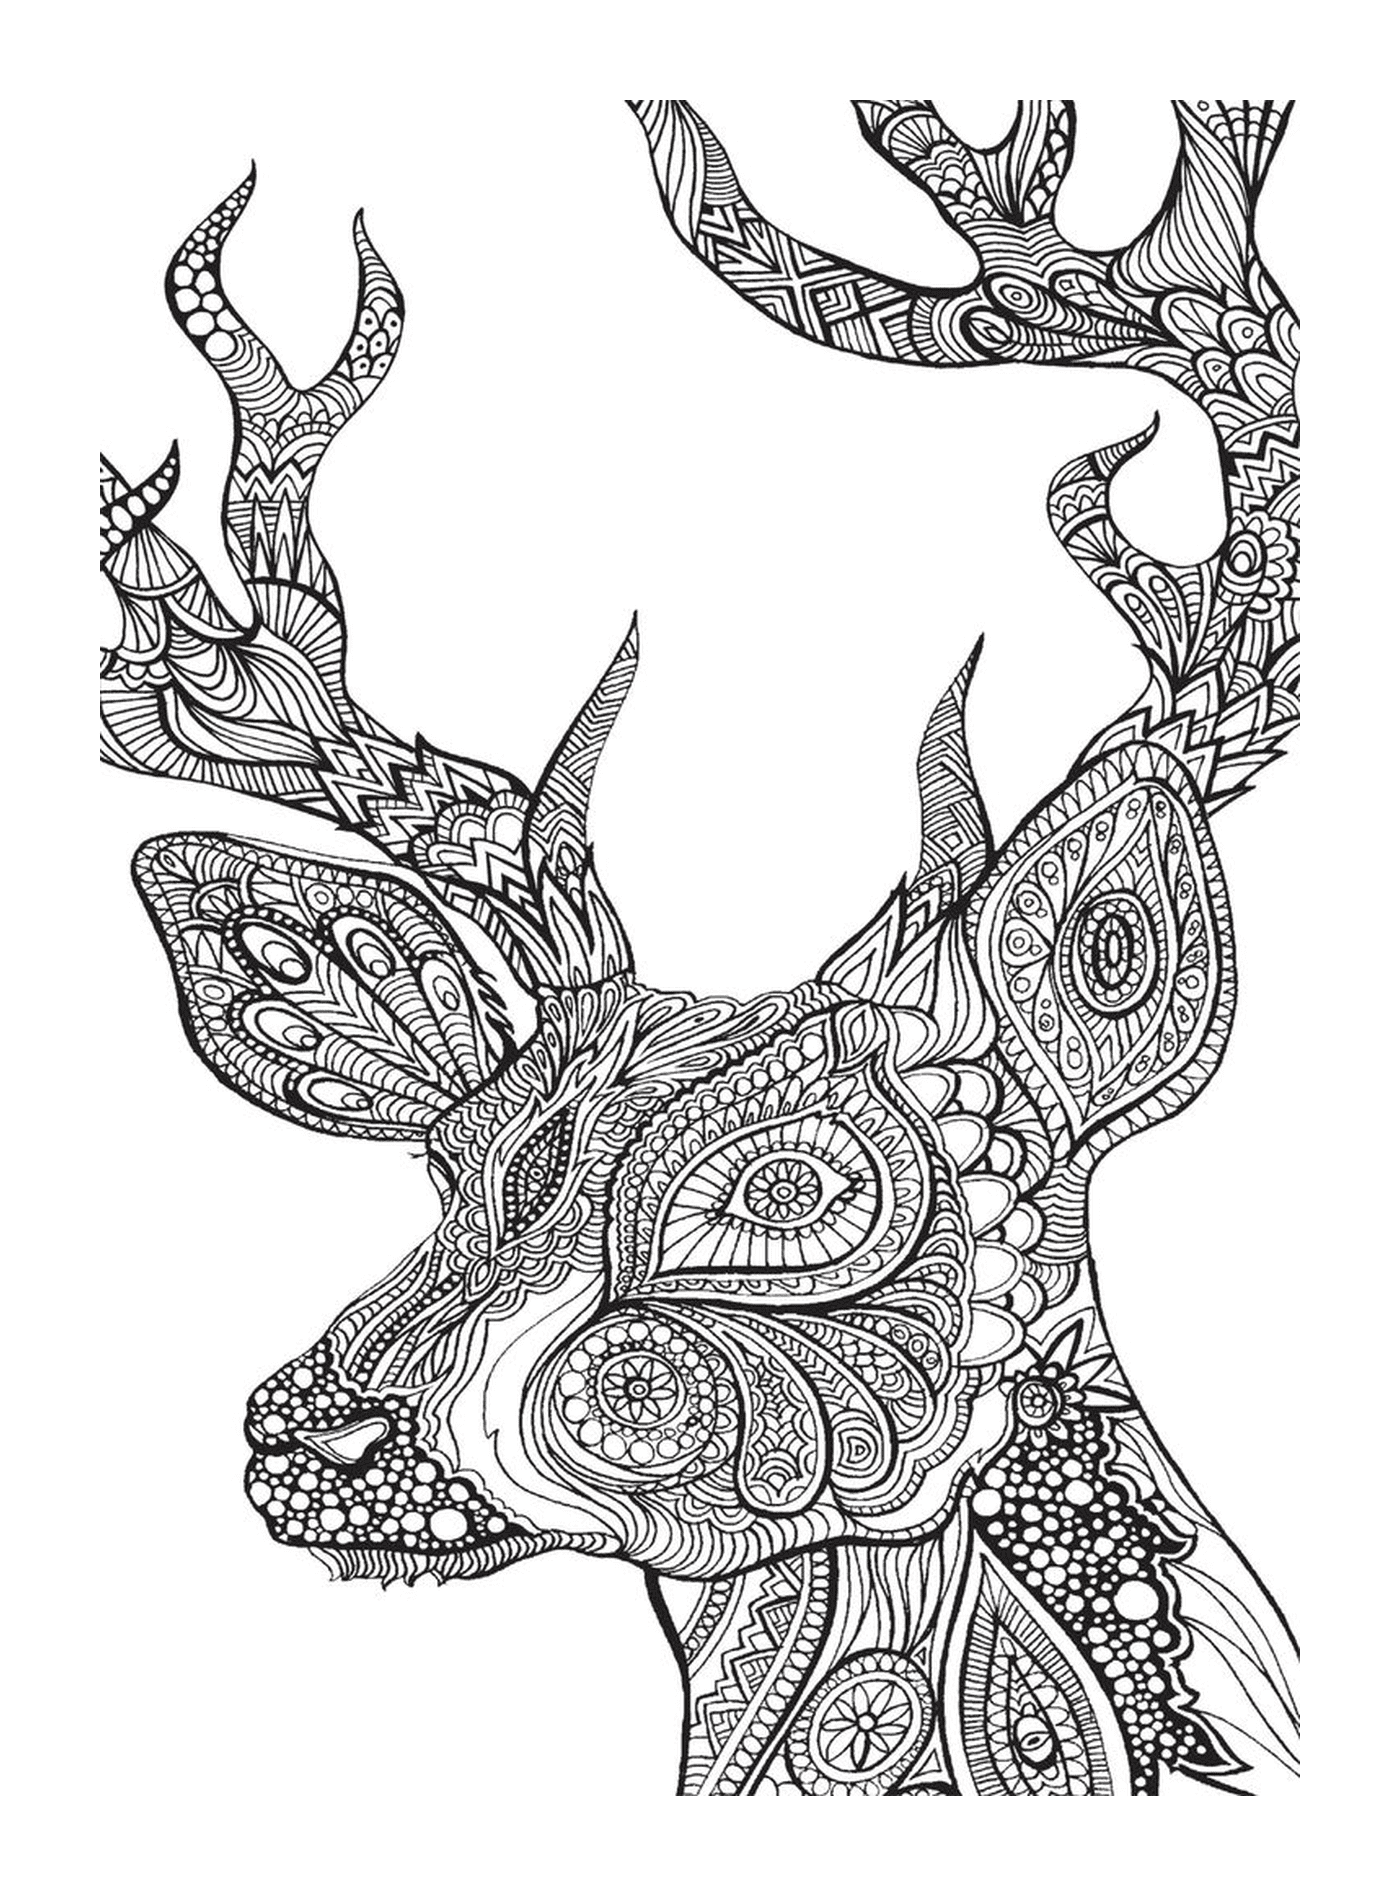  Cabeza de ciervo en el dibujo 